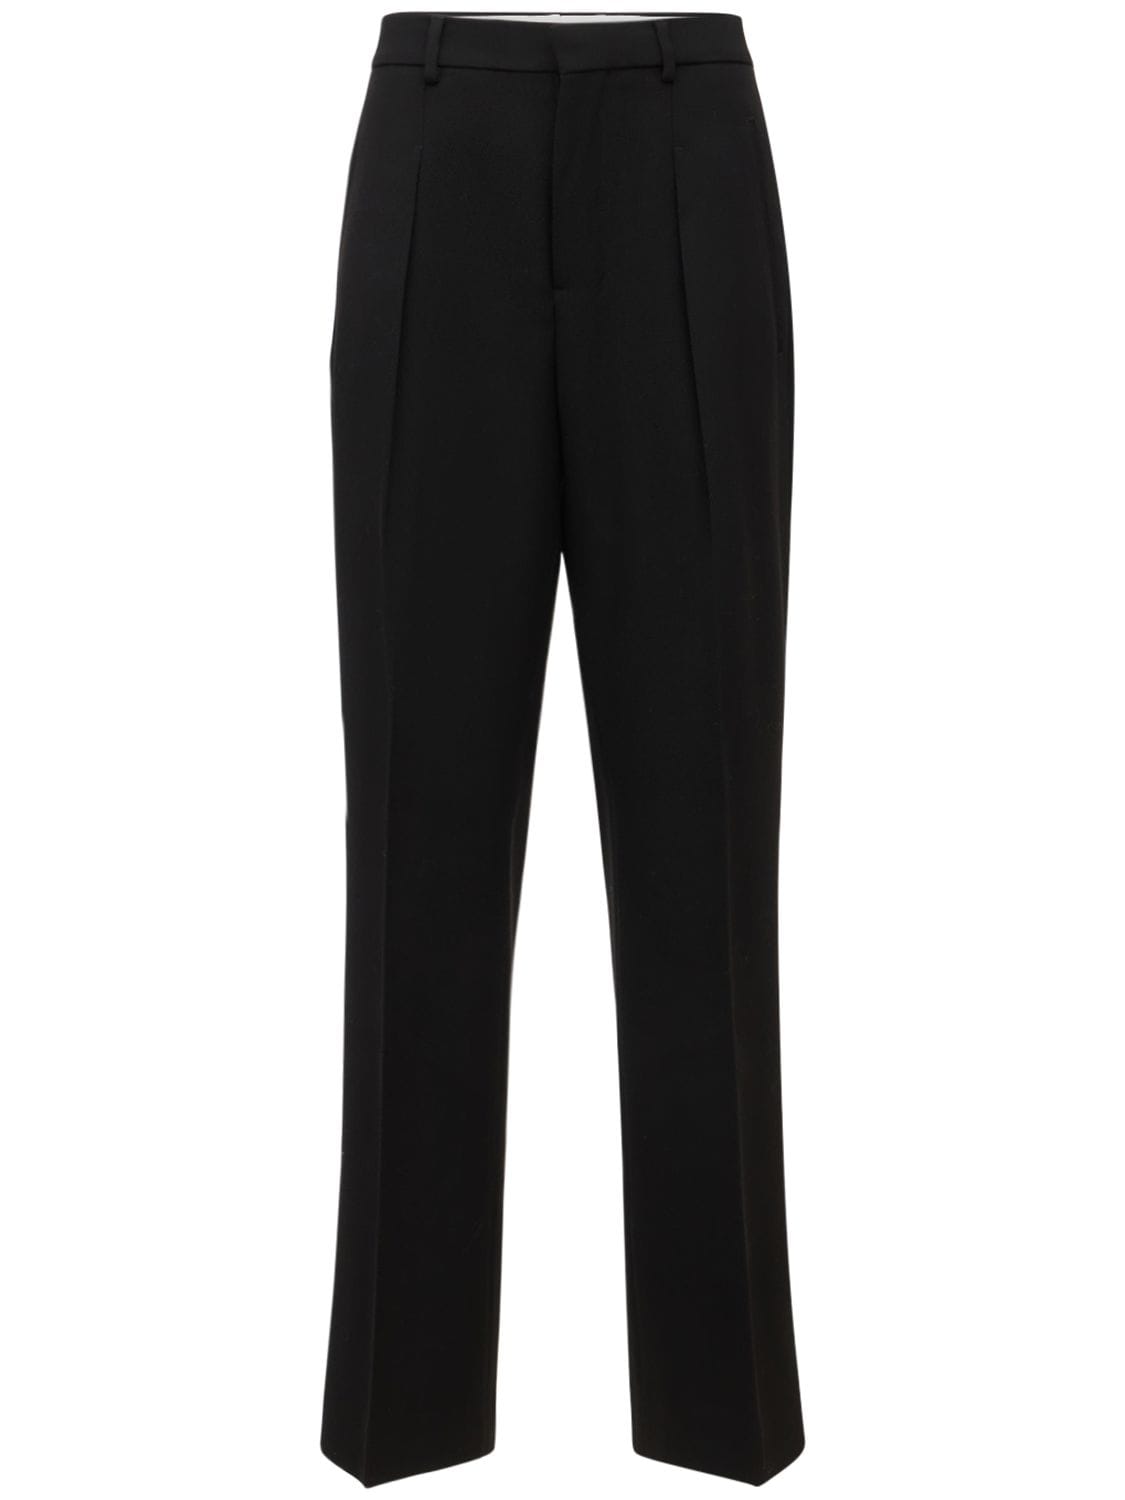 AMI Paris - Wool tricotine straigth pants - Black | Luisaviaroma